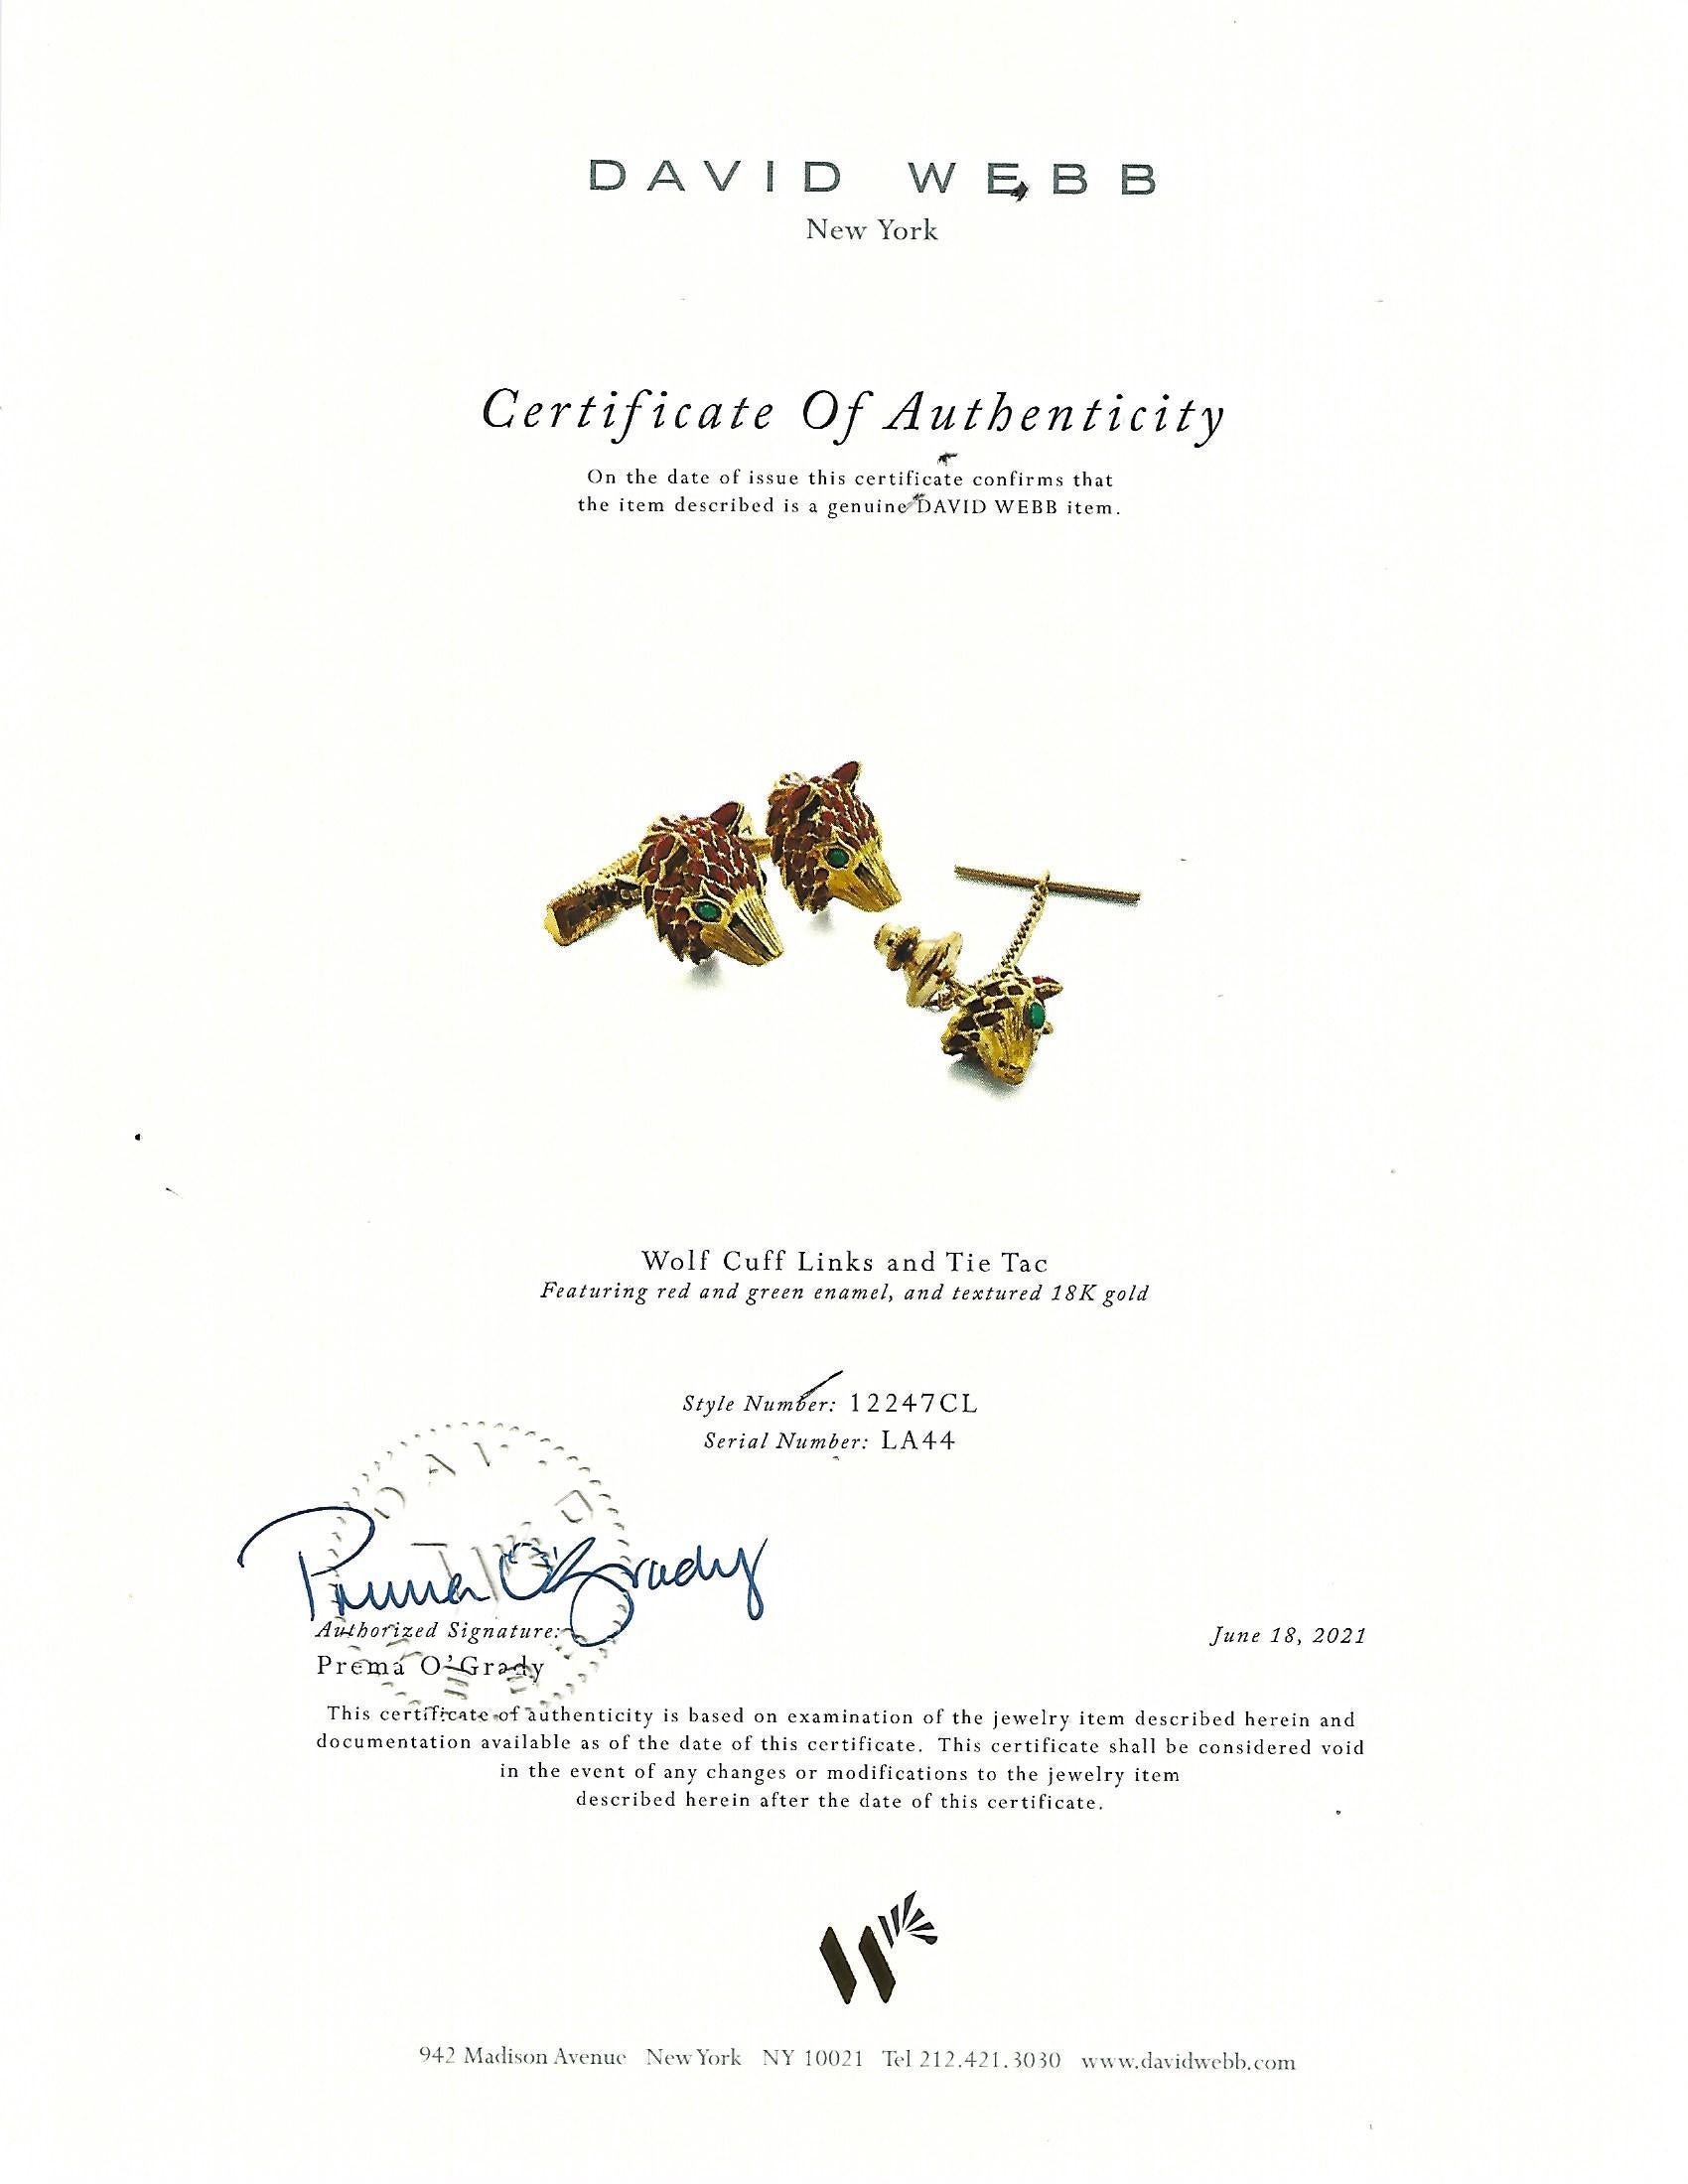 David Webb Enamel Fox Head Cufflink & Tie Tack Set in 18ky Gold with Certificate For Sale 3